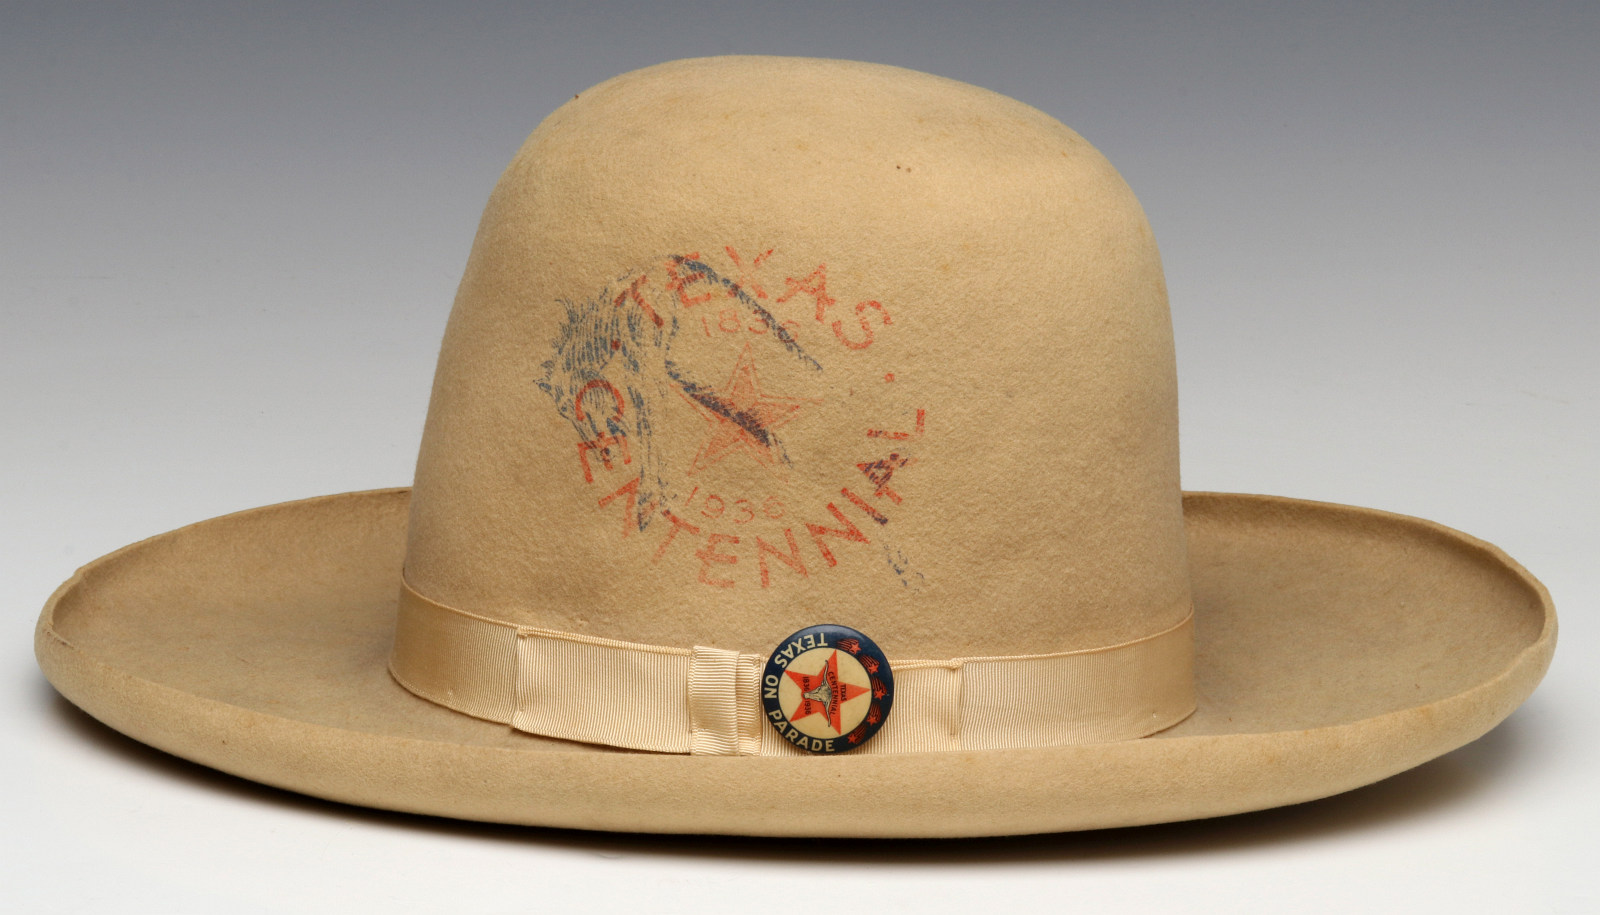 A STETSON 10 GALLON HAT FROM TEXAS CENTENNIAL 1936